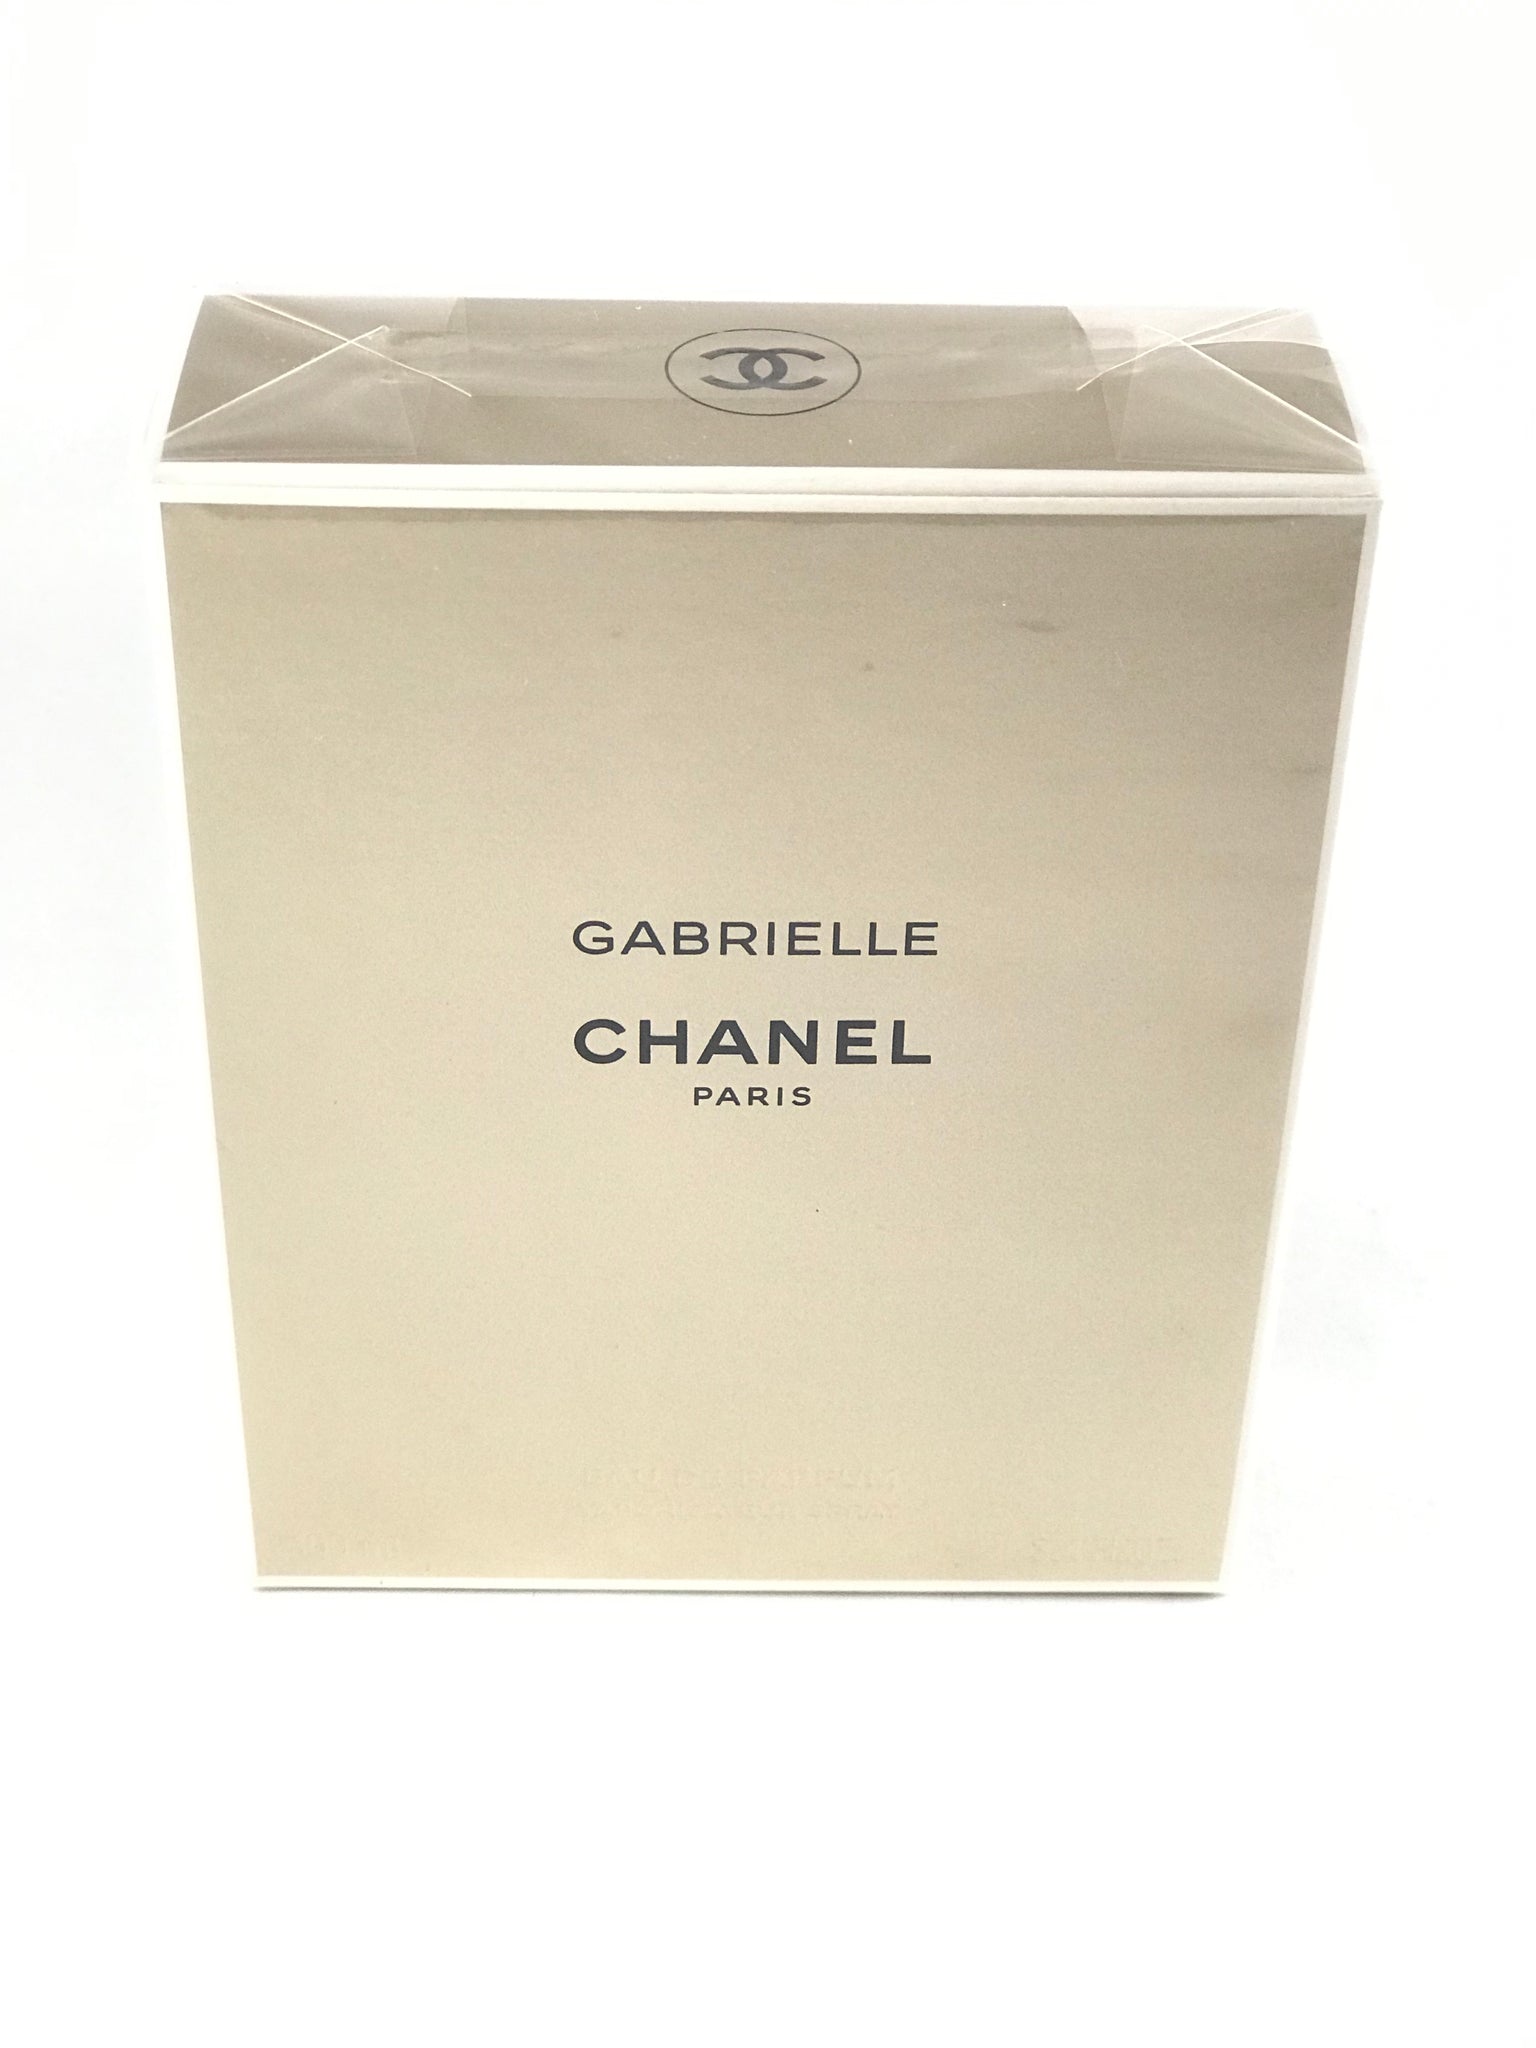 Gabrielle Chanel Eau de Parfum Spray 3.4oz – always special